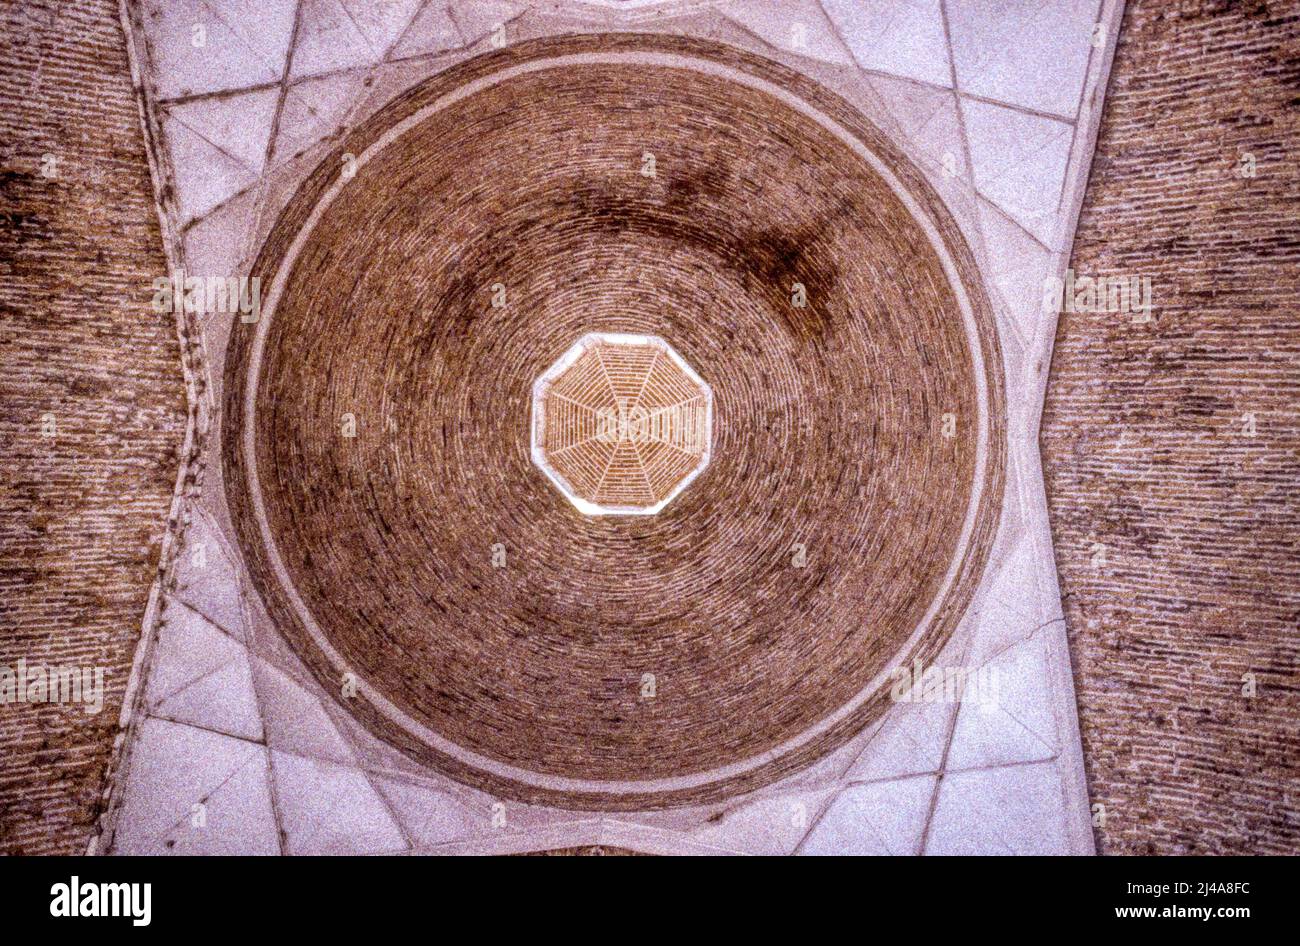 Archivfoto der Decke der 1980er Jahre von der Taki-Sarrafaner Trade Cupola in Buchara, Usbekistan. Bekannt als Dome of the Money Changers & ein originelles Tor zur Stadt. Stockfoto